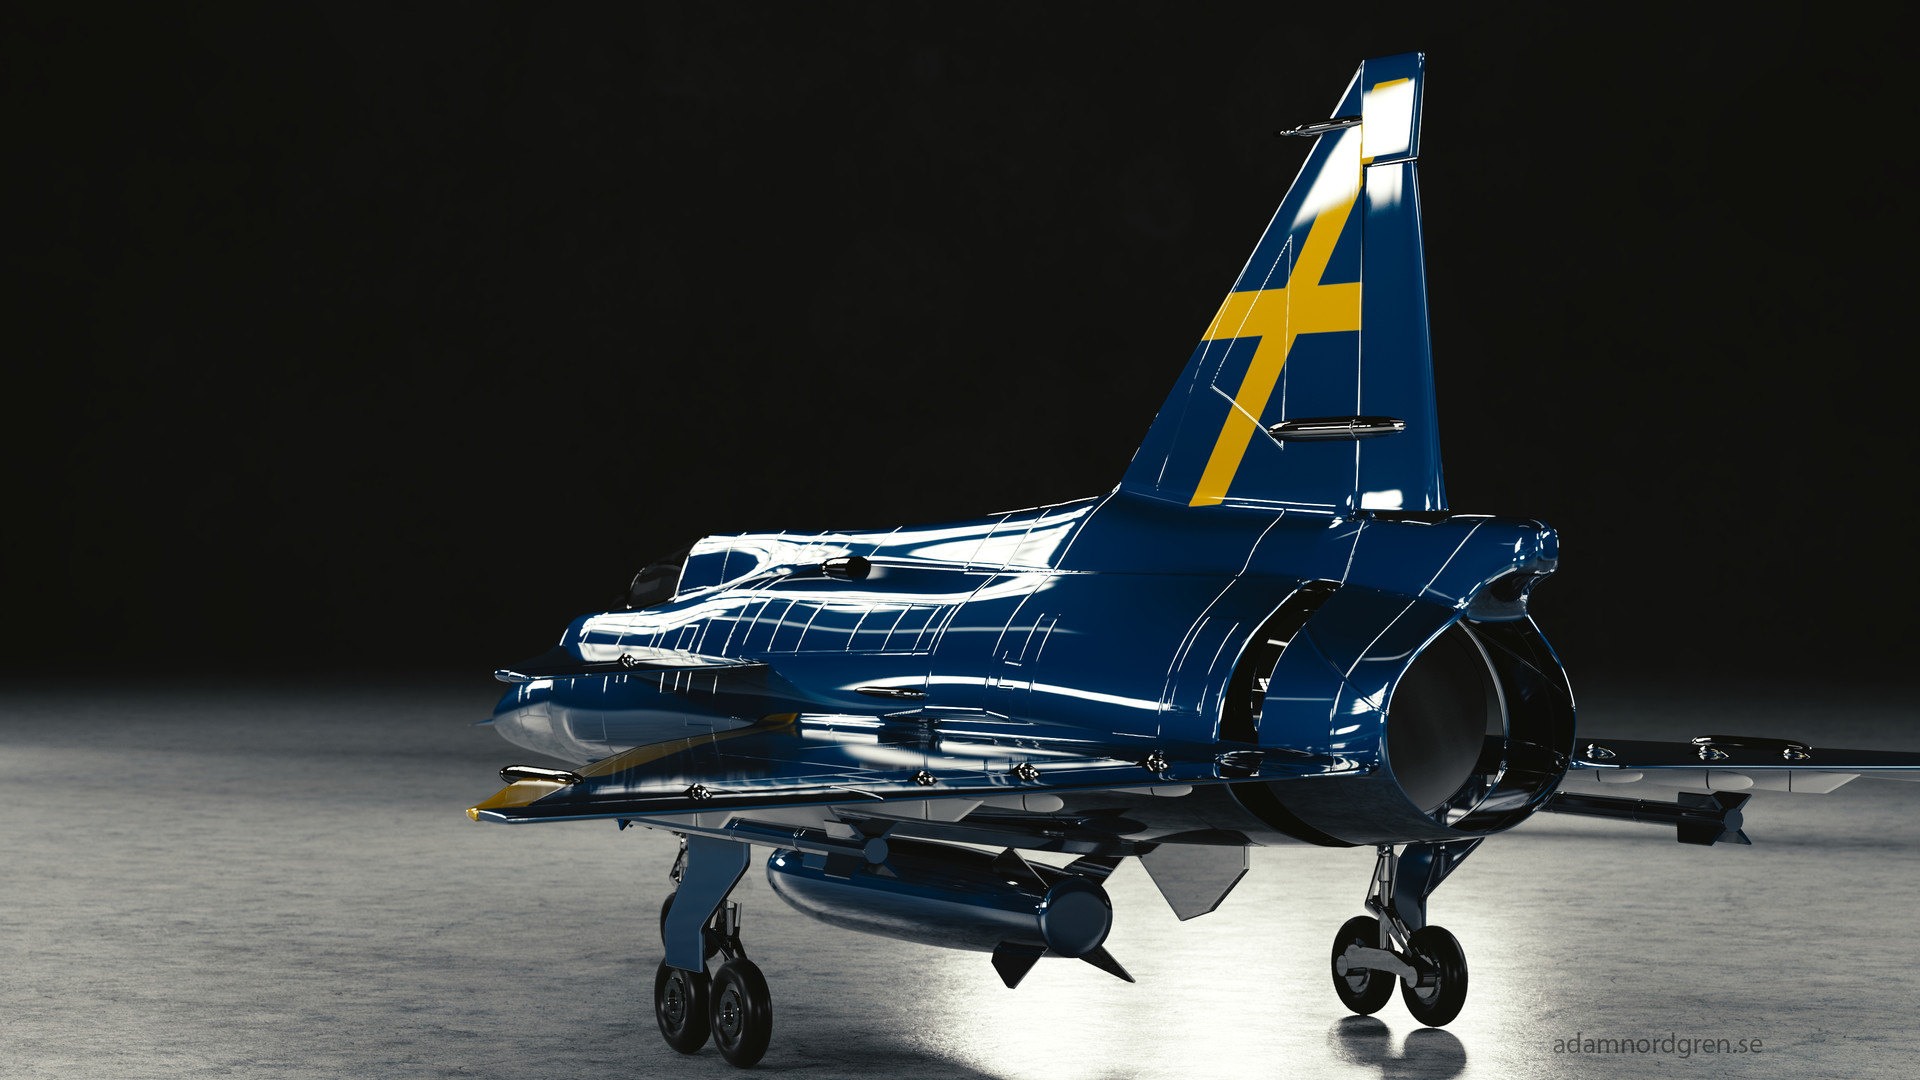 Saab 37 Viggen Wallpapers